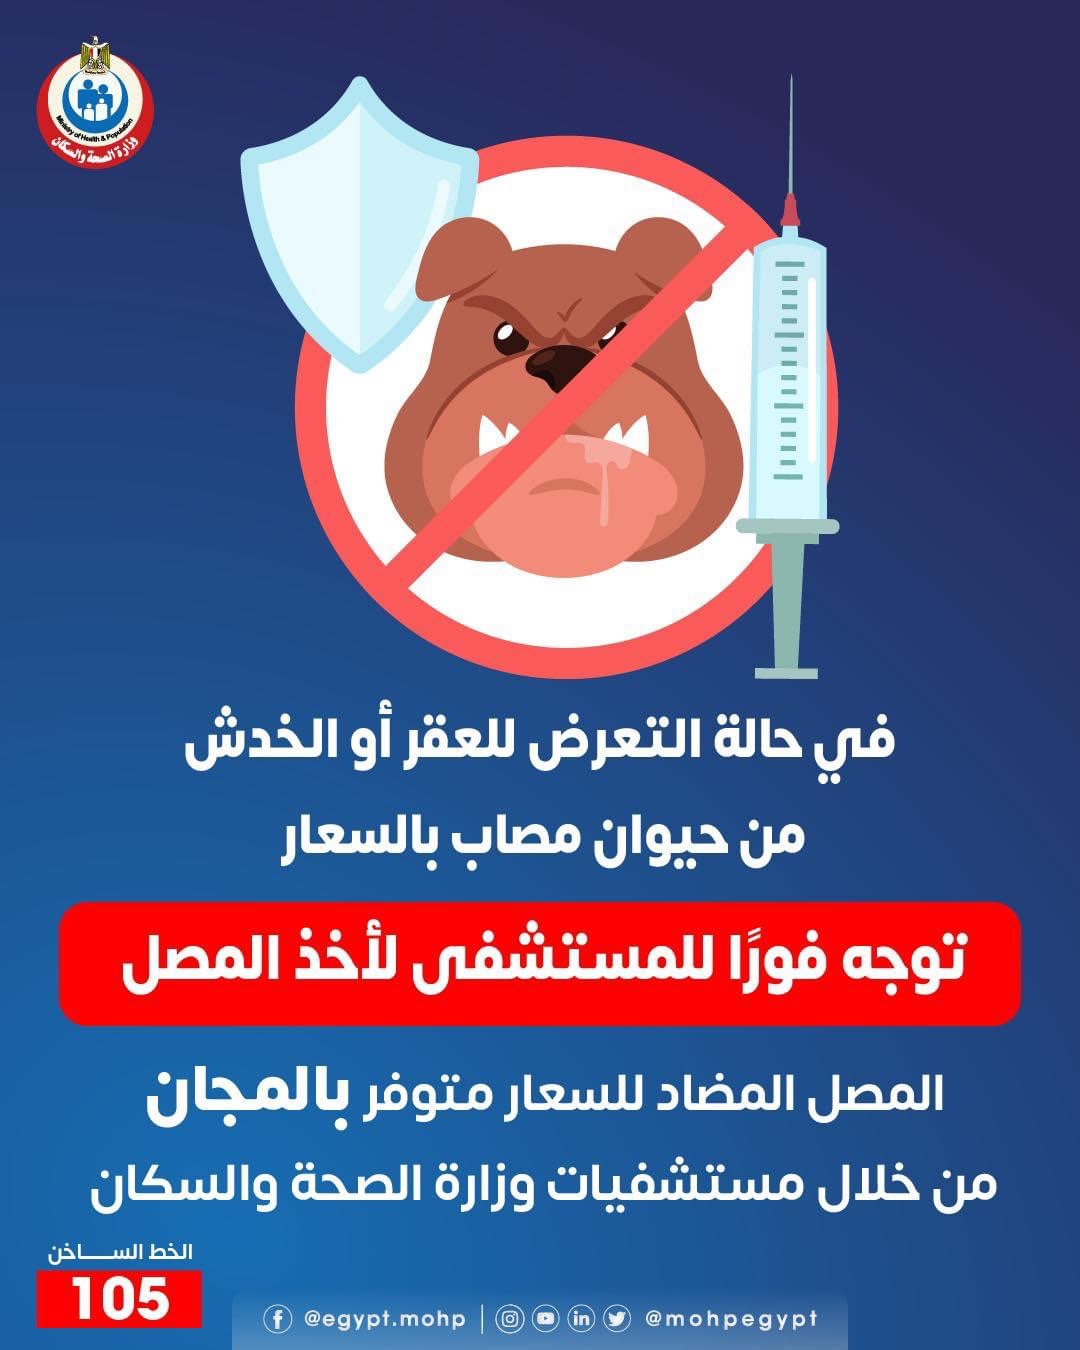 وزارة الصحة: المصل المضاد للسعار متوفر فى المستشفيات بالمجان - اليوم السابع